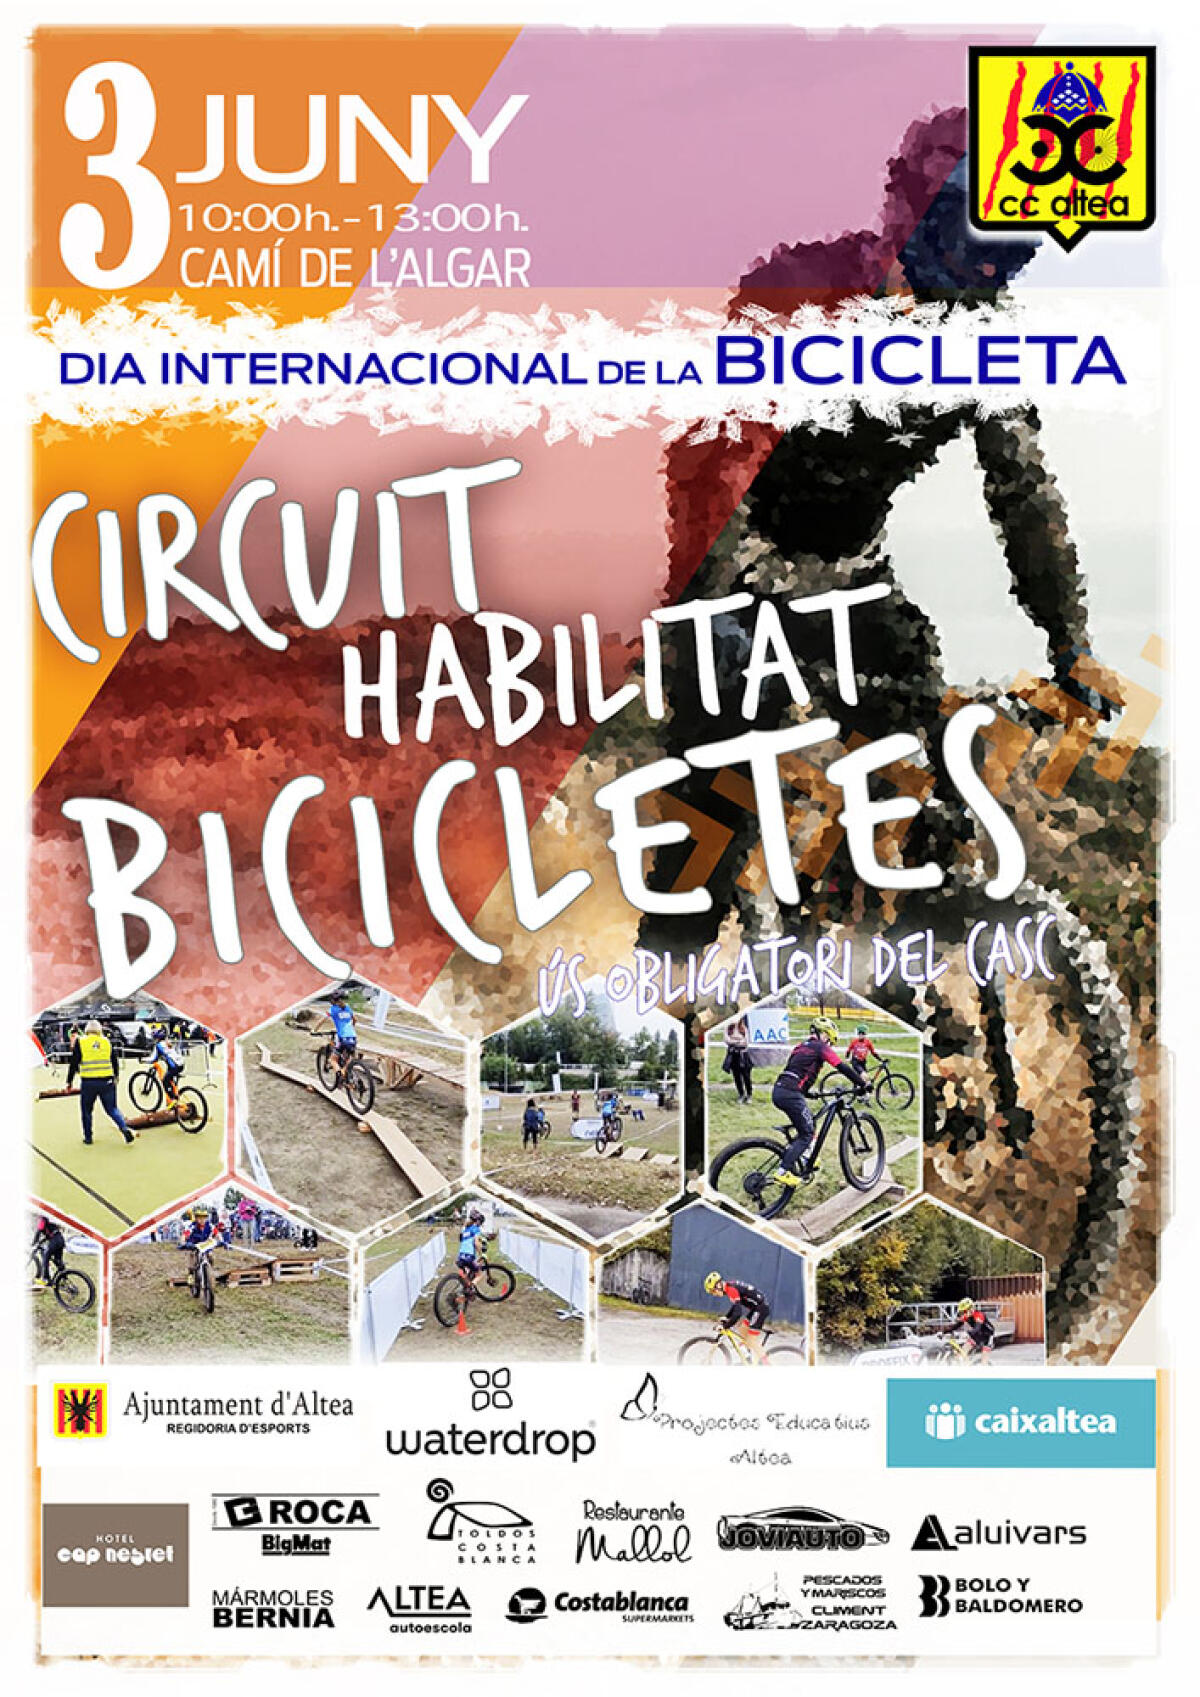 Deportes y el Club Ciclista Altea organizan un circuito de habilidad para celebrar el Día Internacional de la Bicicleta